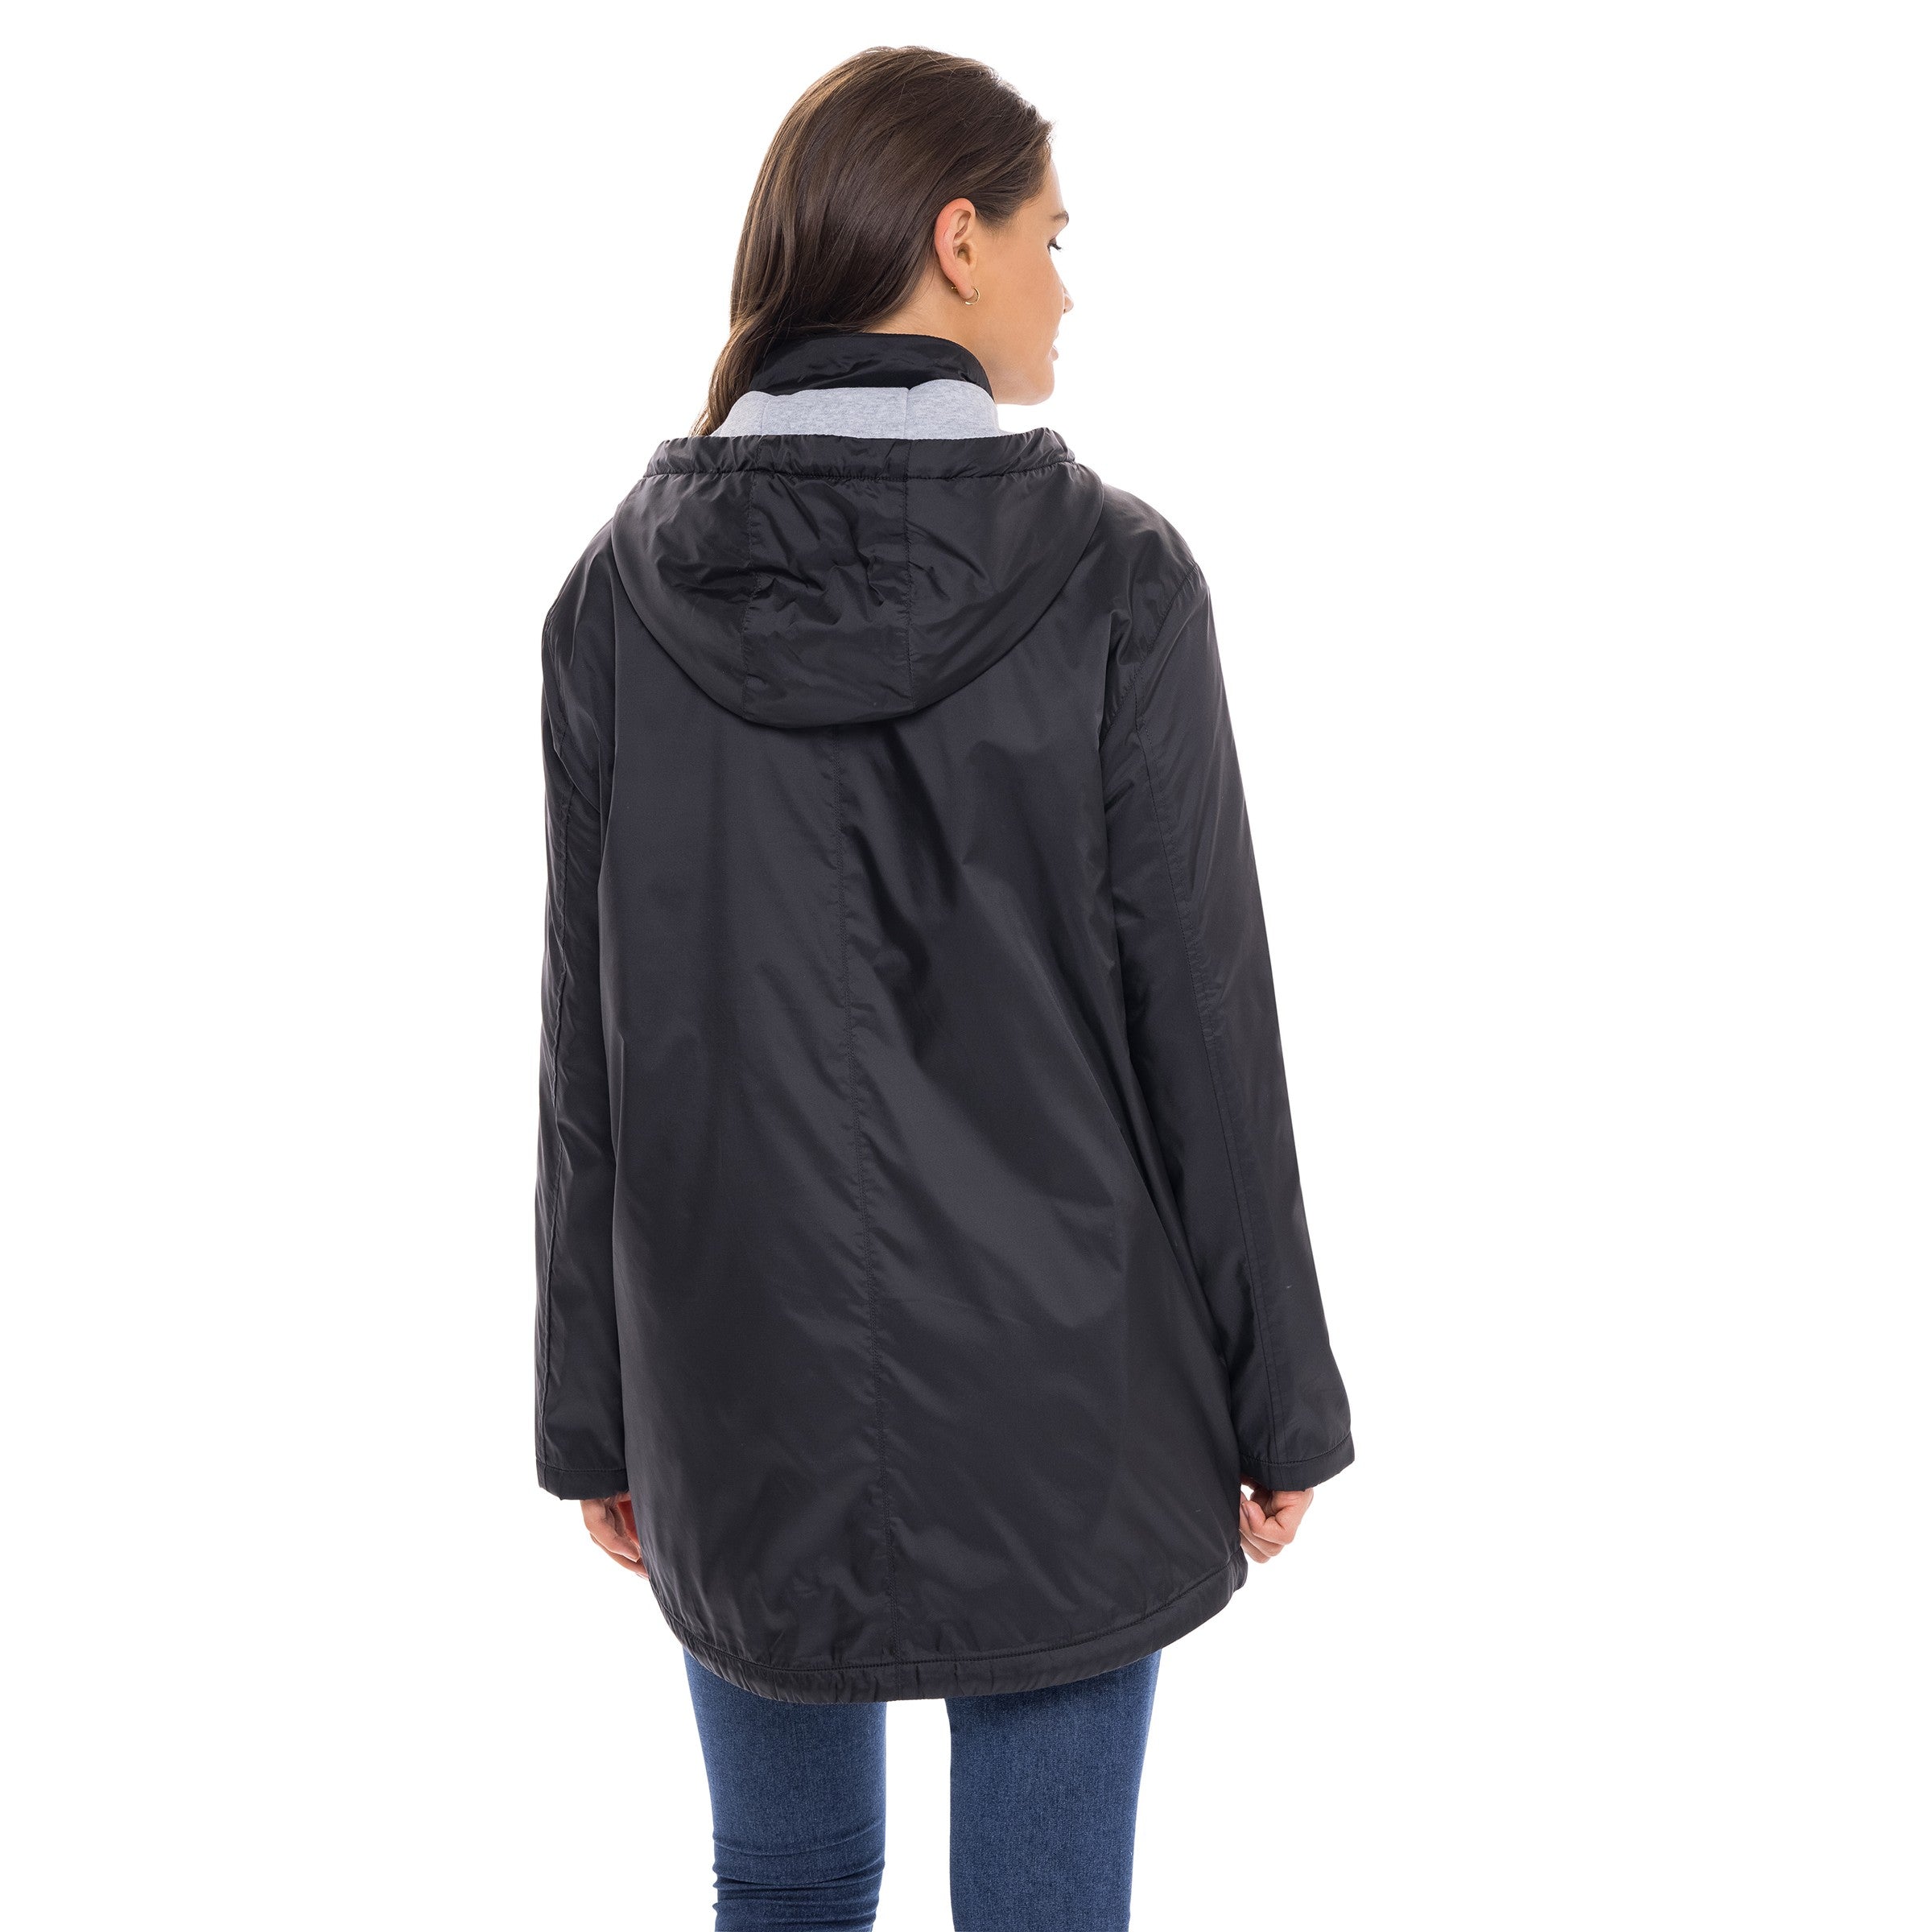 Women's Windbreaker Rain Jacket